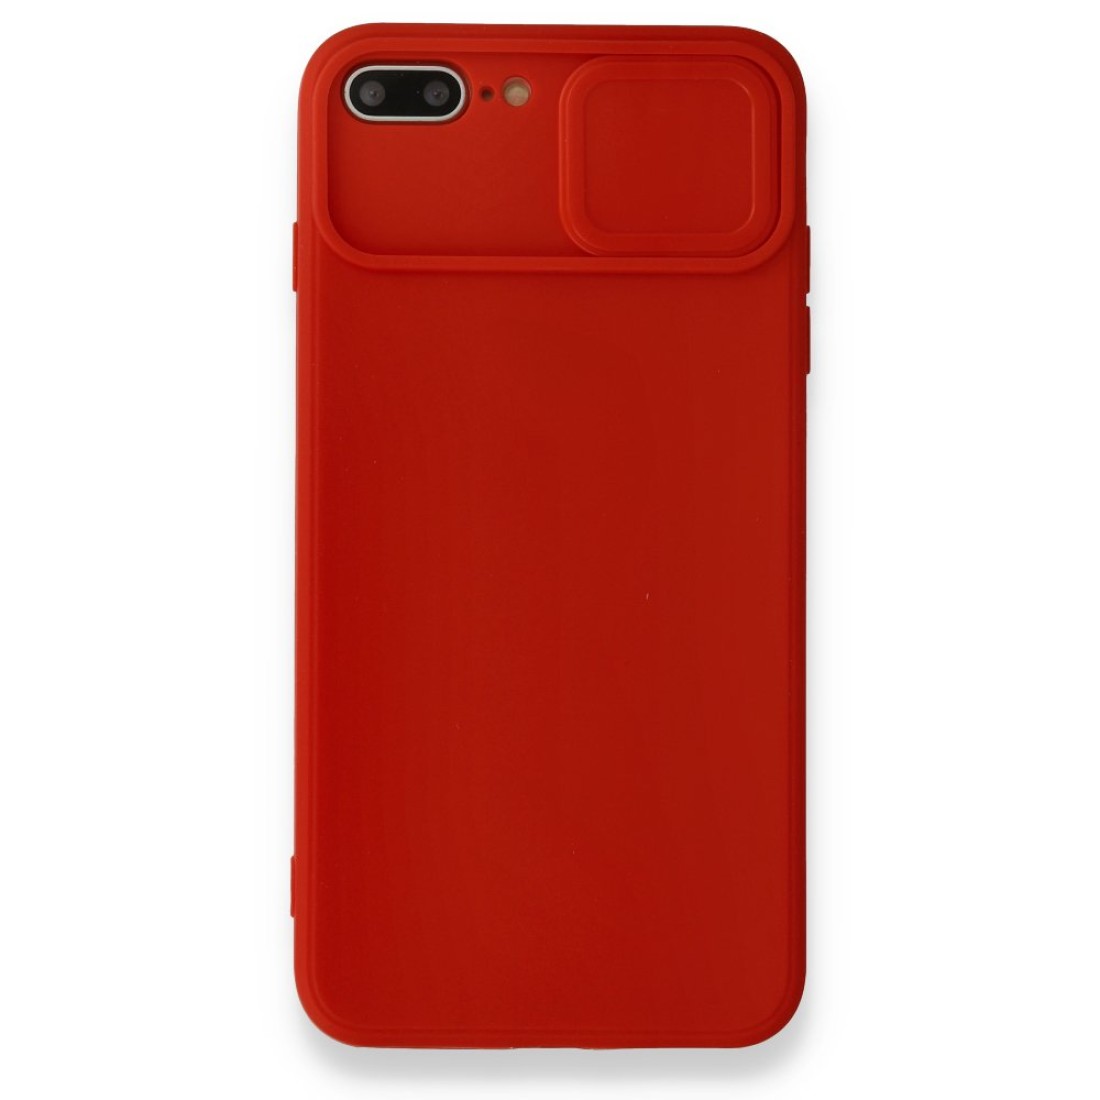 Apple iPhone 8 Plus Kılıf Color Lens Silikon - Kırmızı